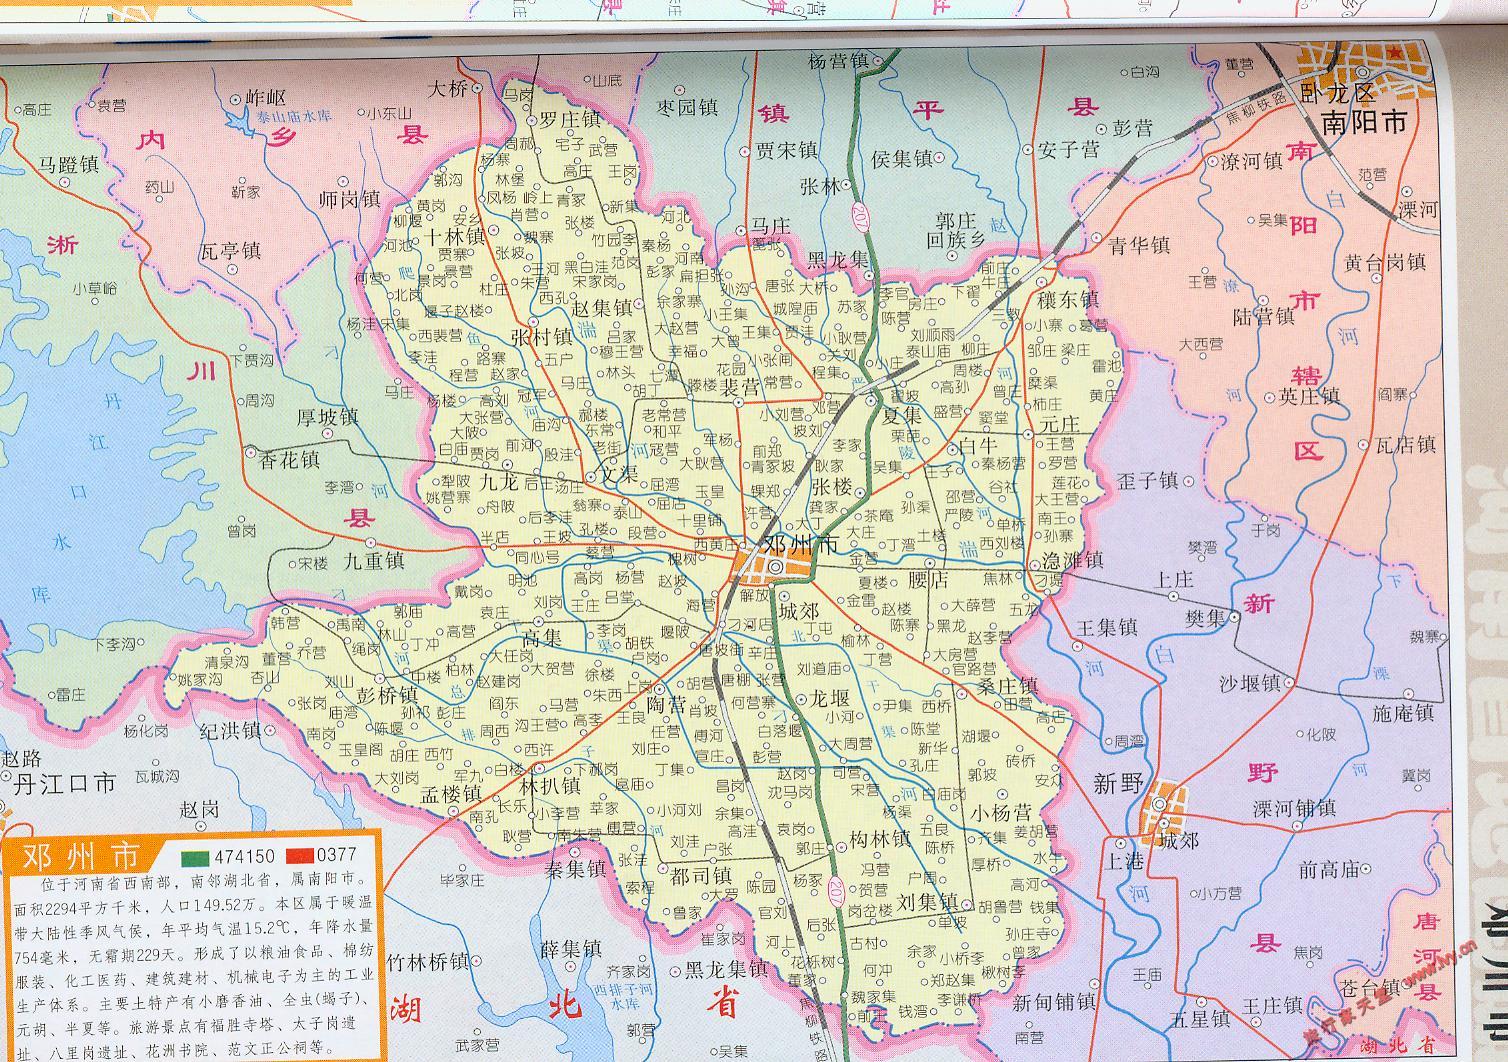 地图窝 中国 河南 南阳  (长按地图可以放大,保存,分享)图片